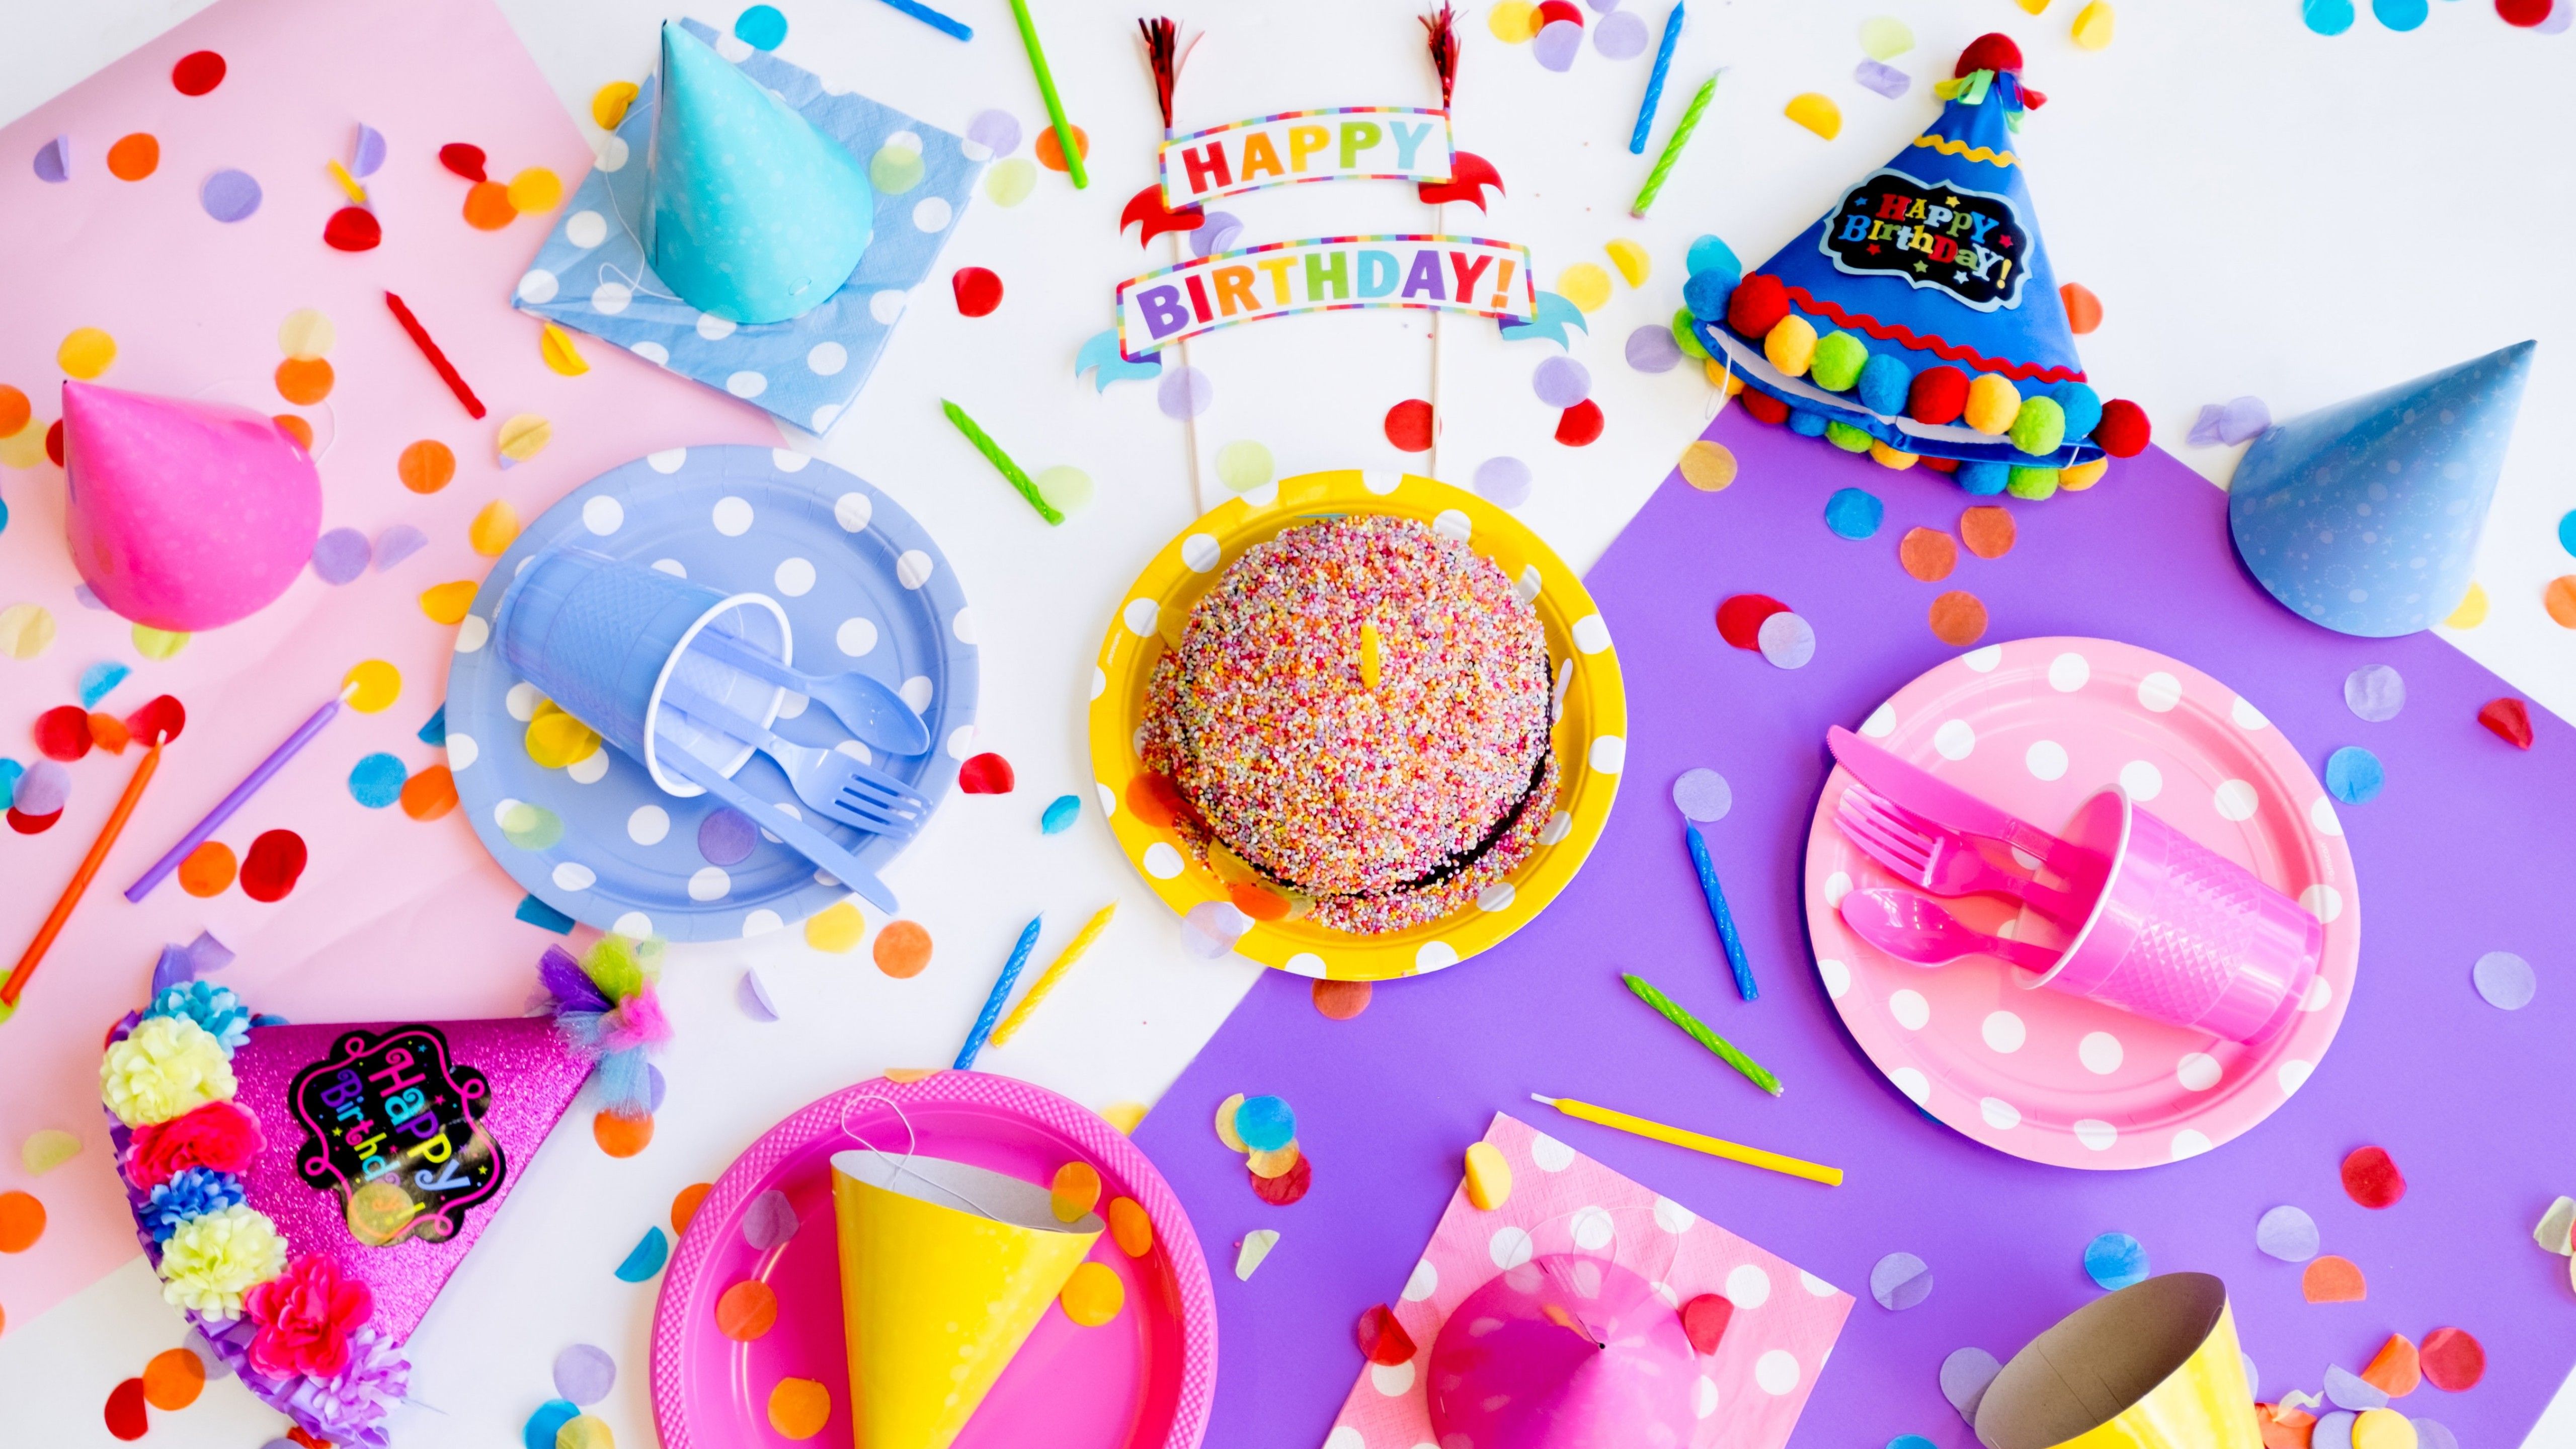 Happy Birthday 4K Wallpaper, Birthday party, Birthday decoration, Cake, Colorful, 5K, Celebrations